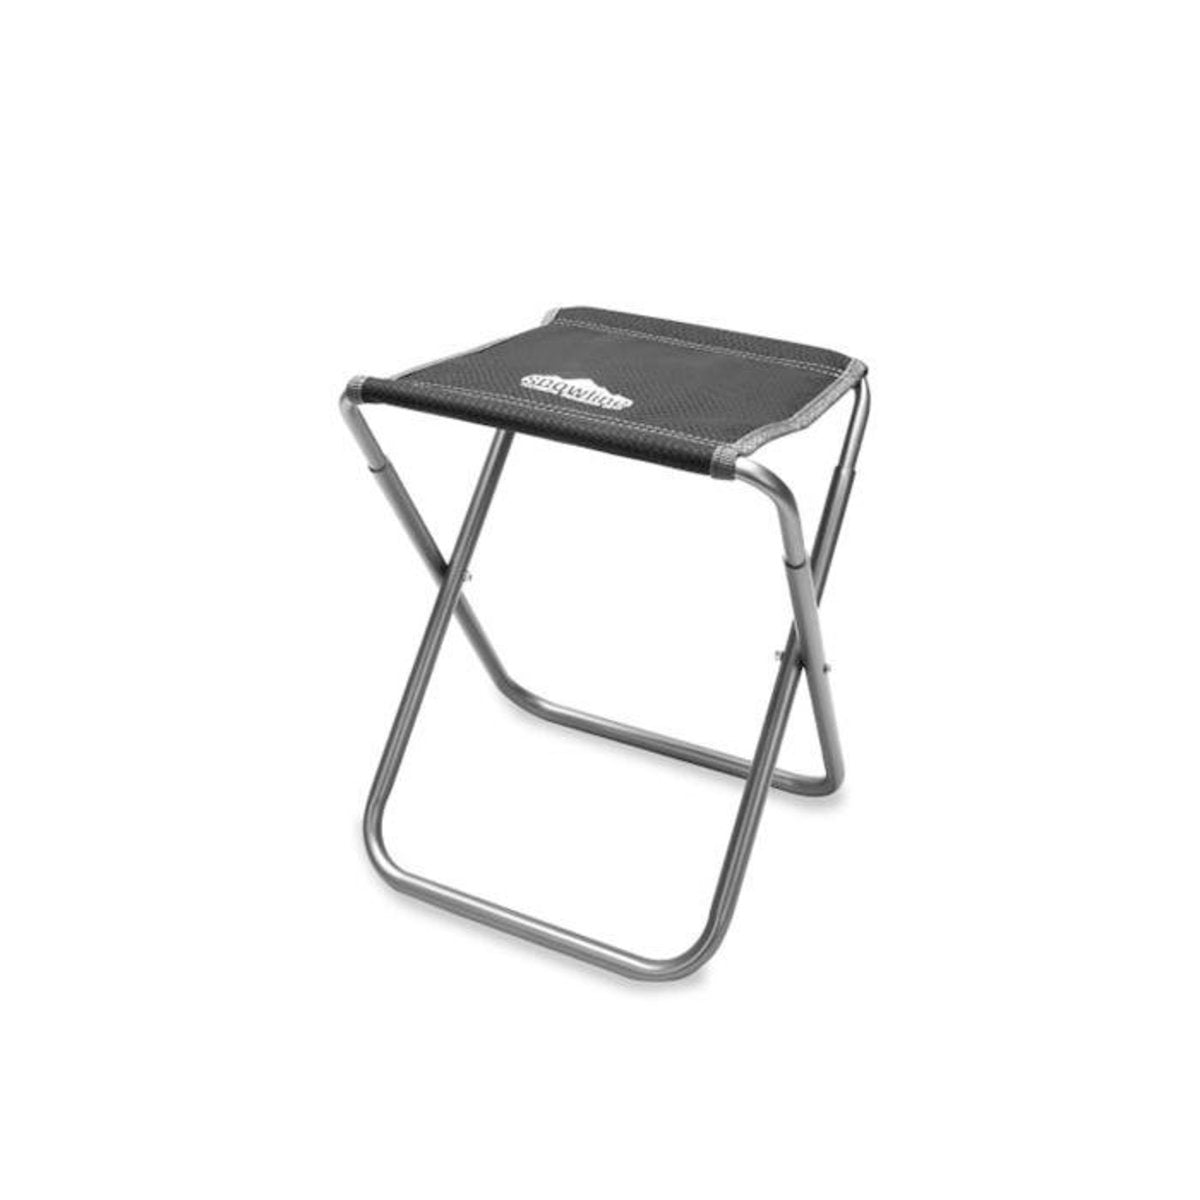 韓國戶外鋁製摺椅 SN Alpine Slim Chair L AA (New)